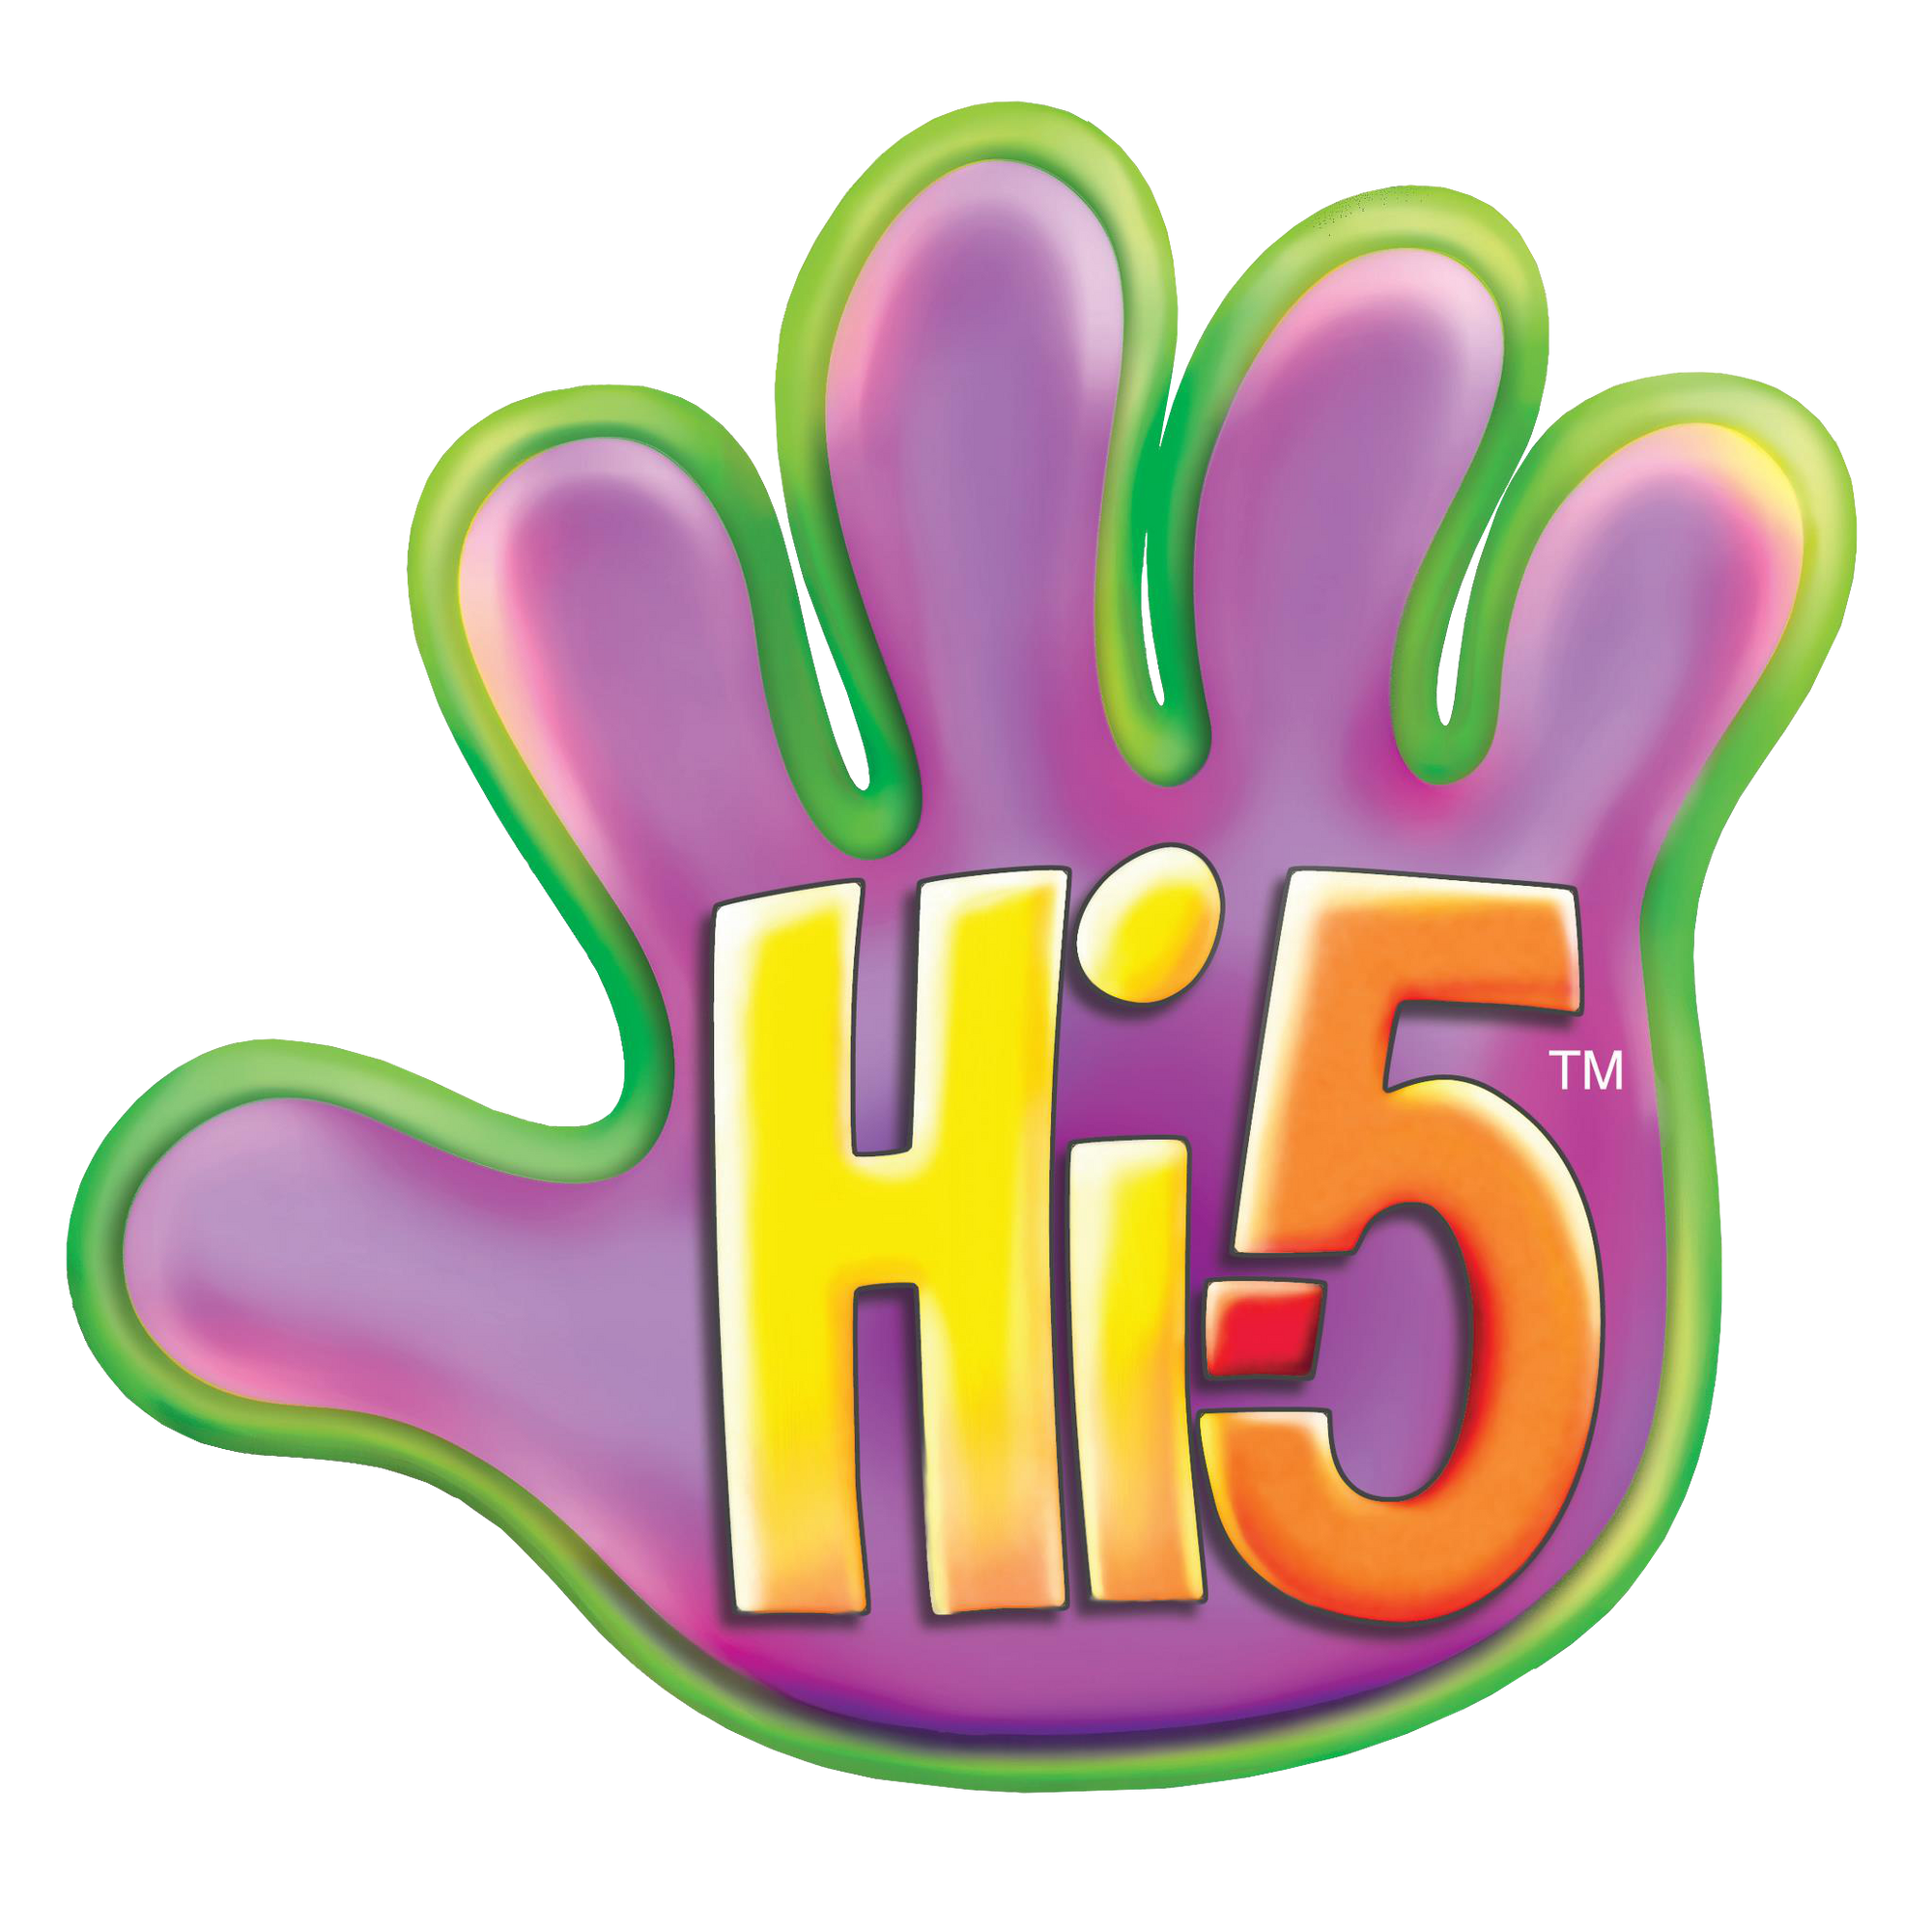 Привет 5 класс. Hi5. Hi. Подик hi5. Одноразки Hi 5.